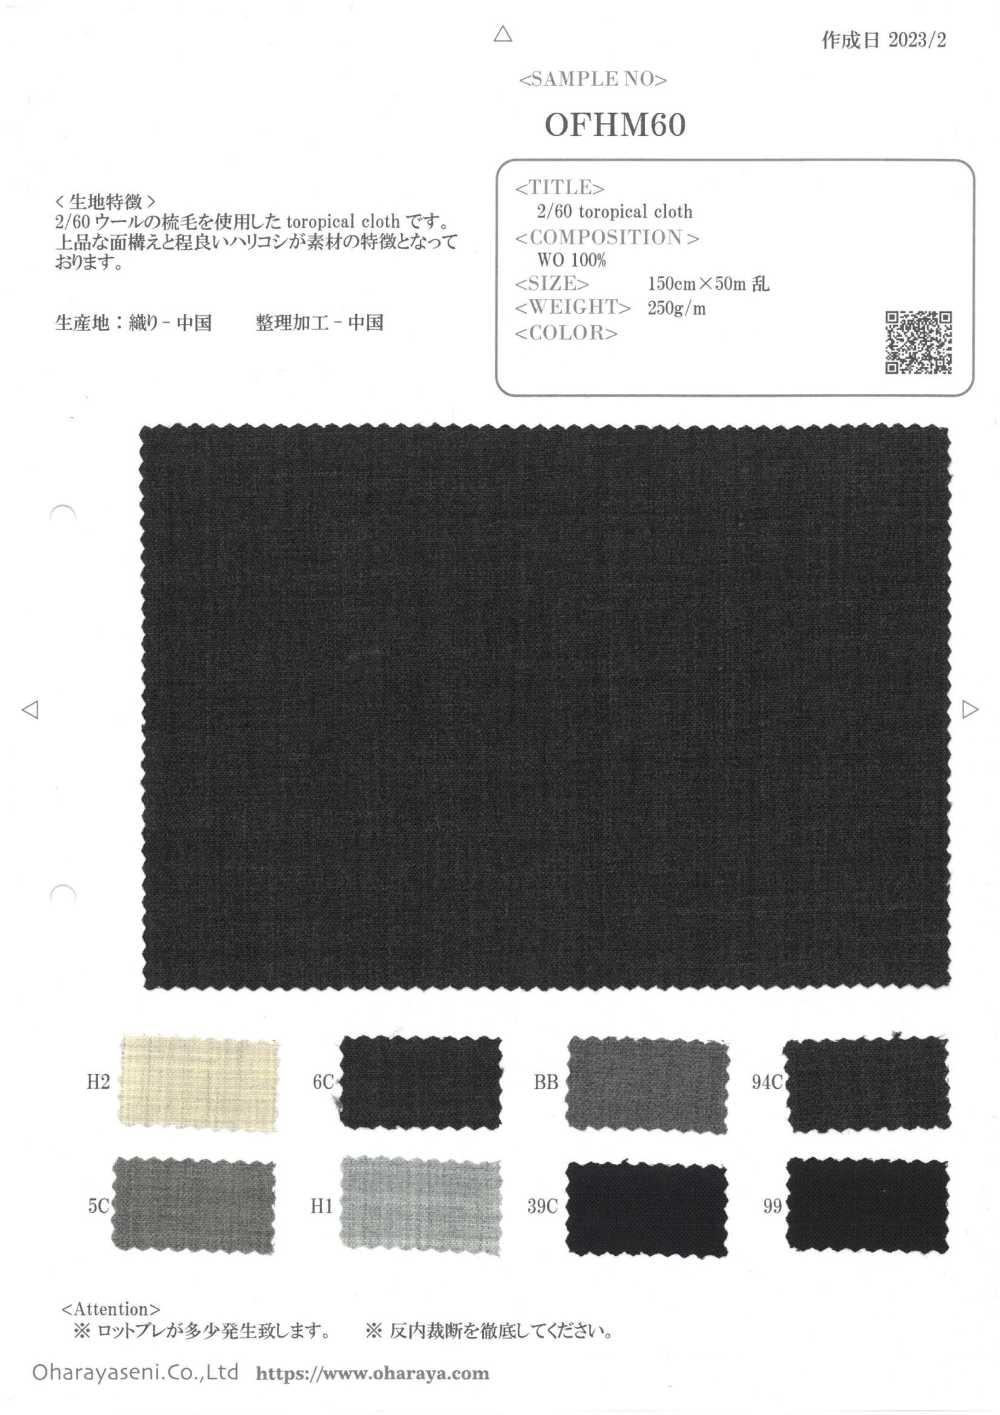 OFHM60 2/60 Tropenstoff[Textilgewebe] Oharayaseni